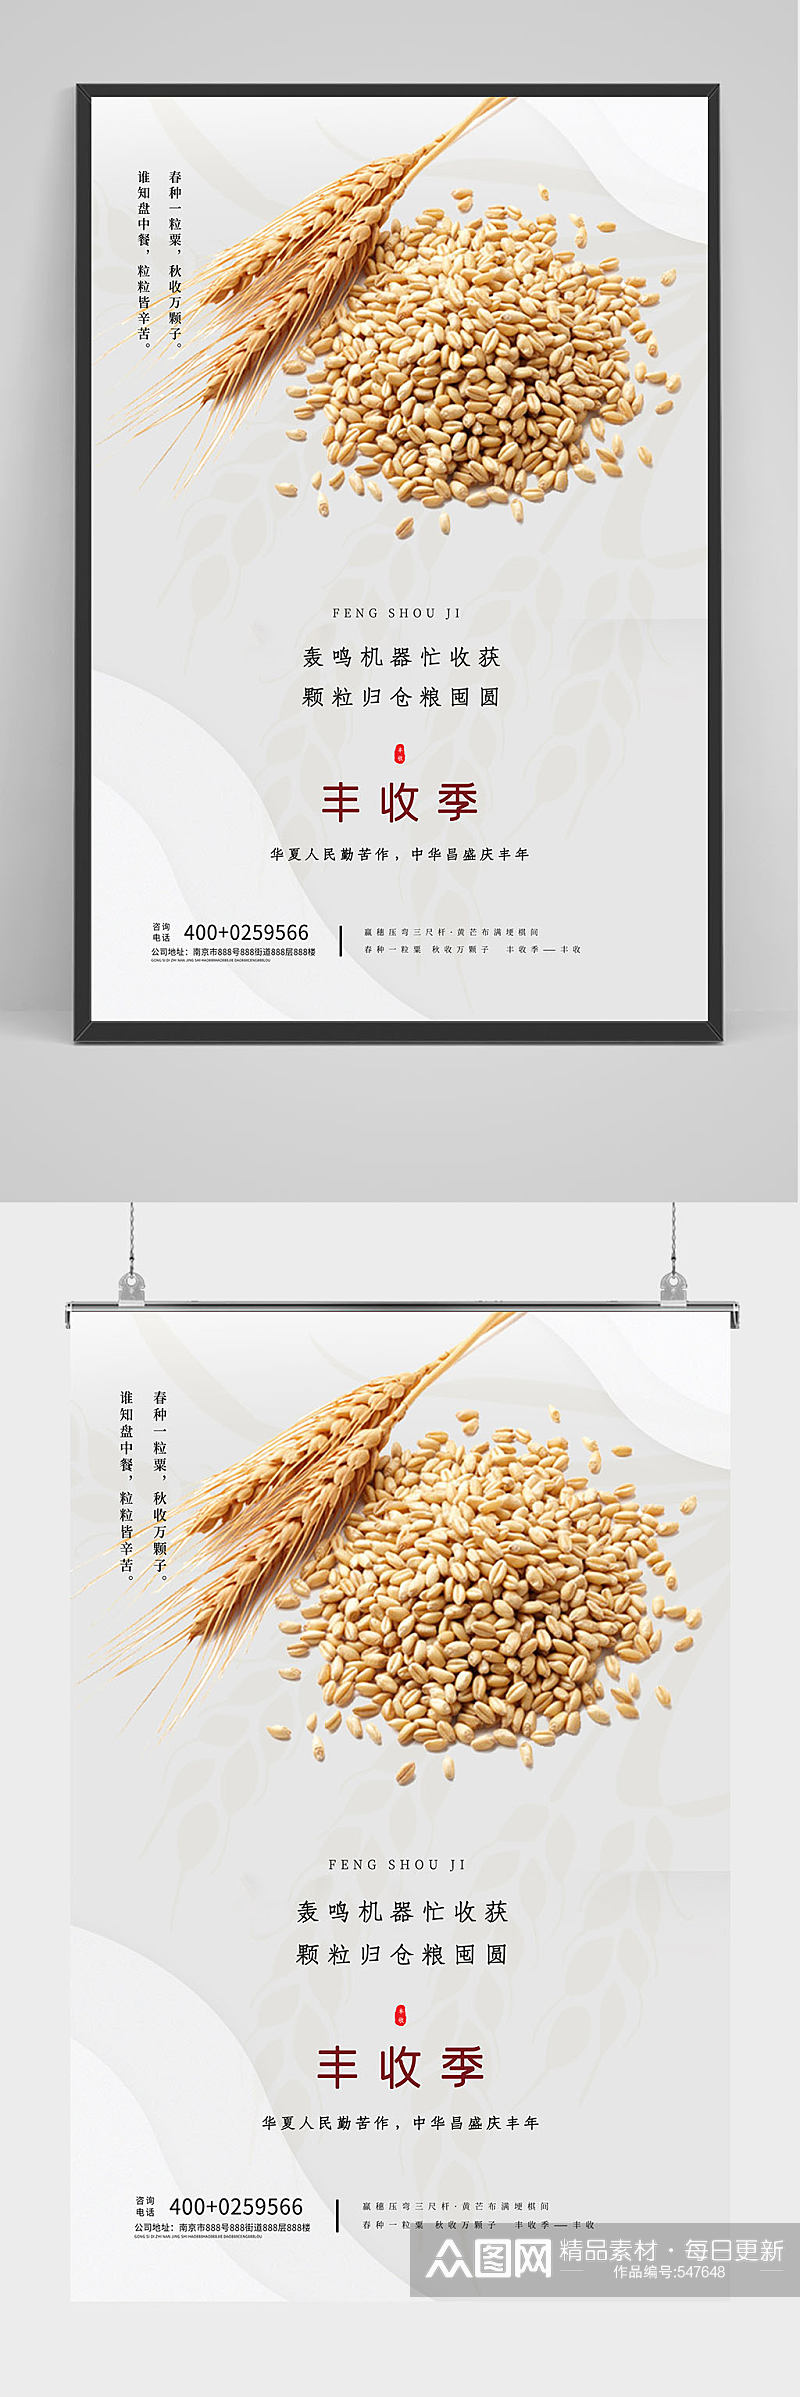 中国农民丰收季海报设计素材